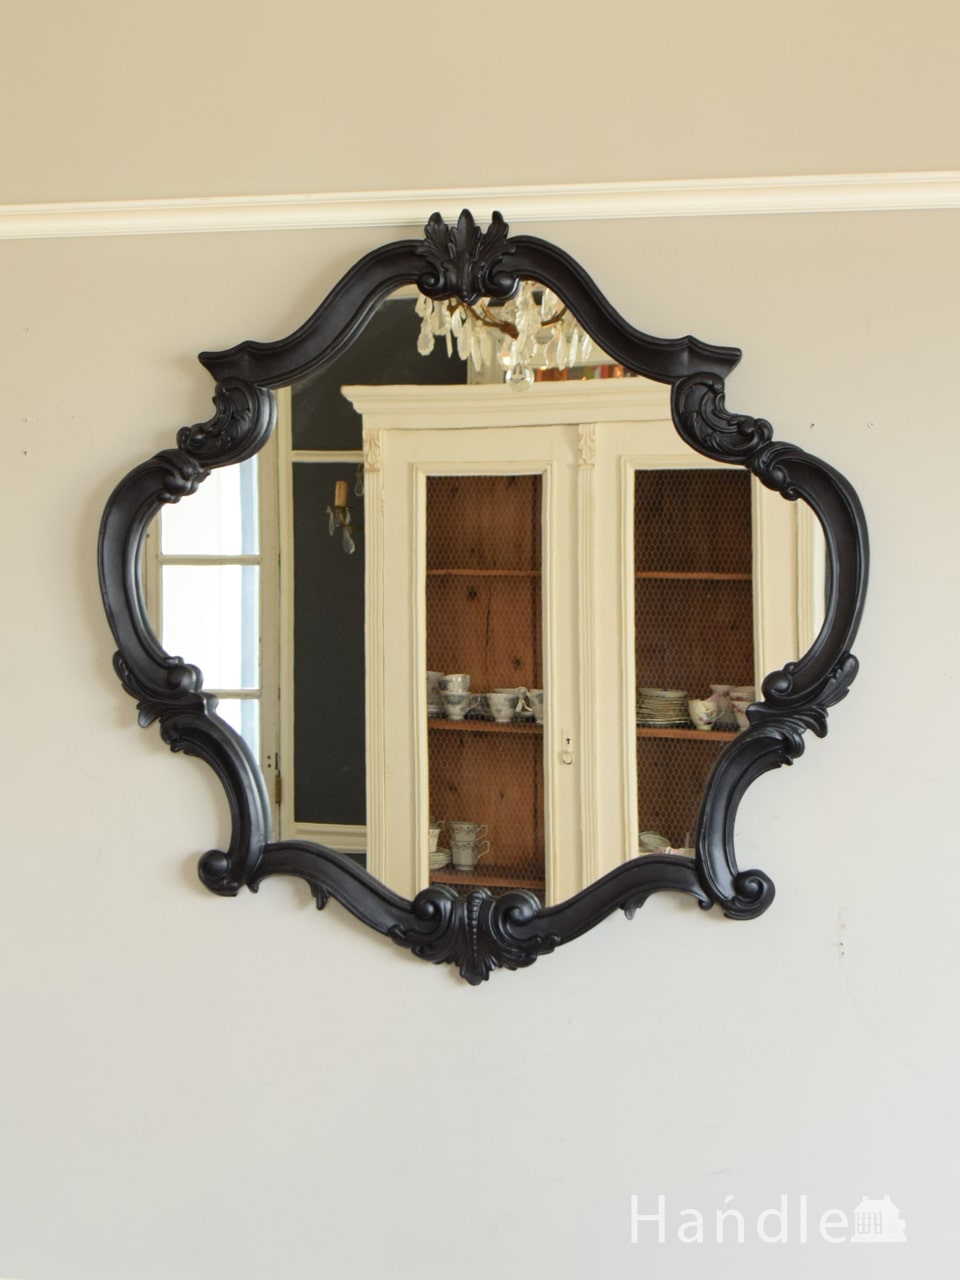 アンティーク調のおしゃれな鏡、デコラティブな装飾が豪華なウォール